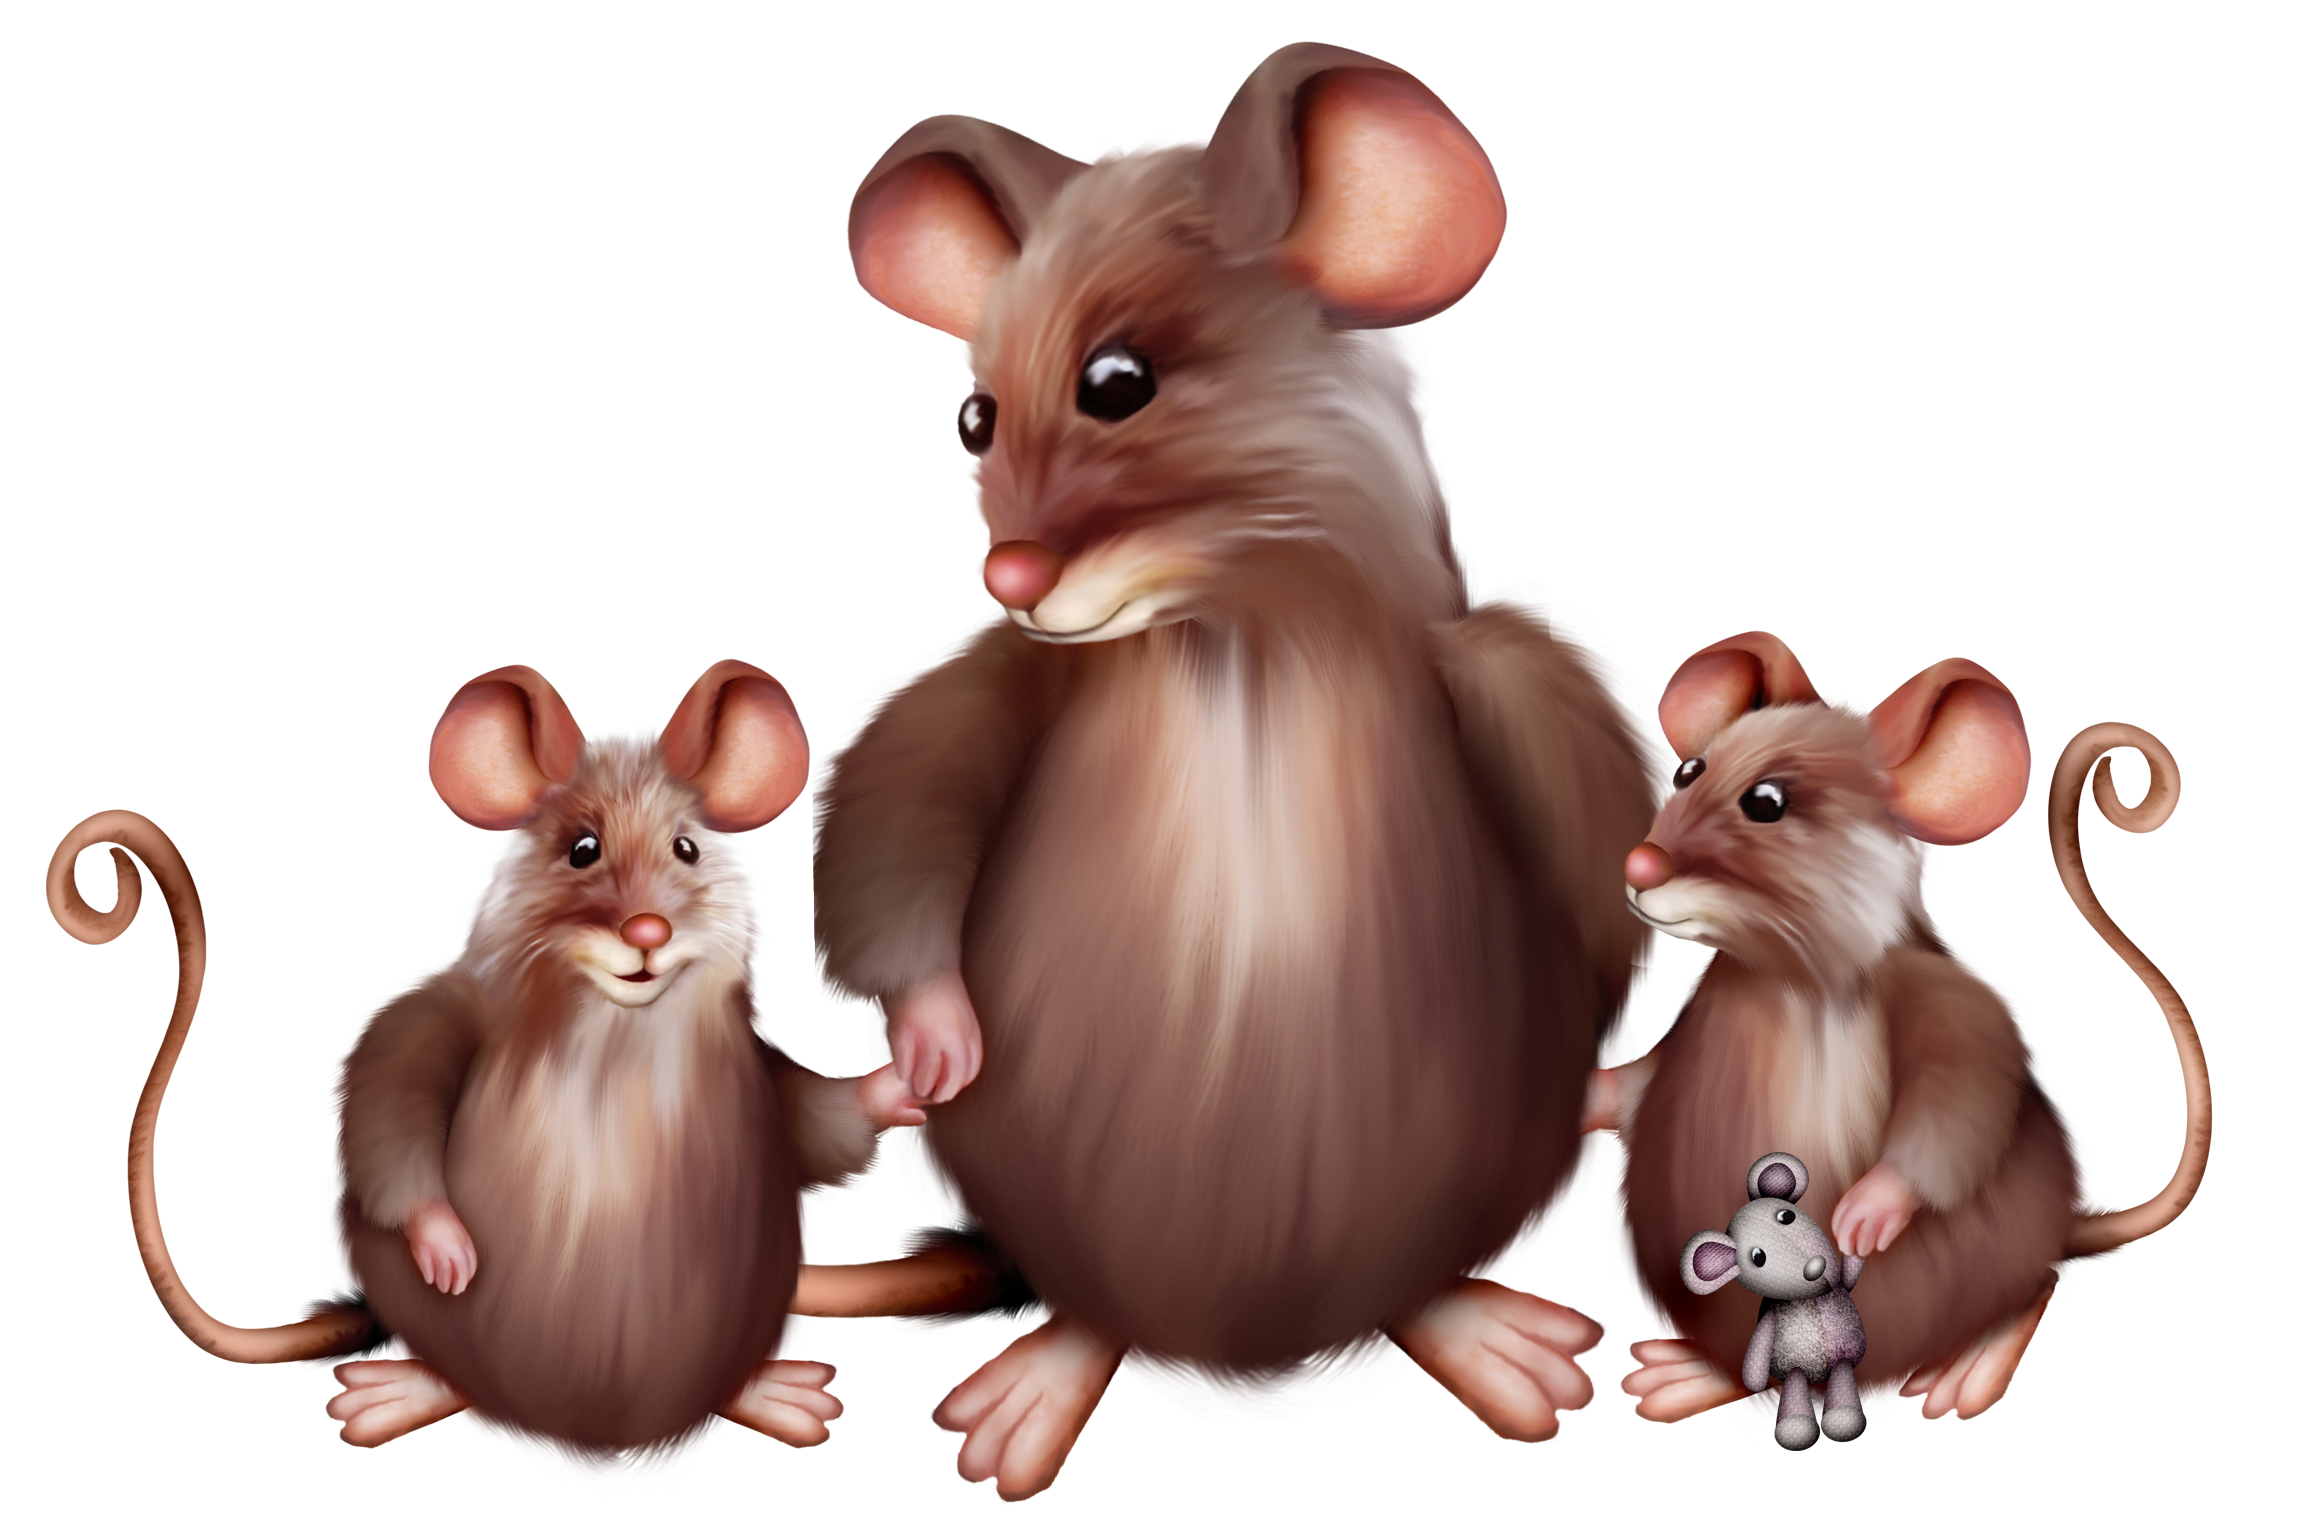 Картинки мышь для детей на прозрачном фоне. Два мышонка. Три мышонка. Мышь и мышата для детей. Мышка с мышатами для детей.